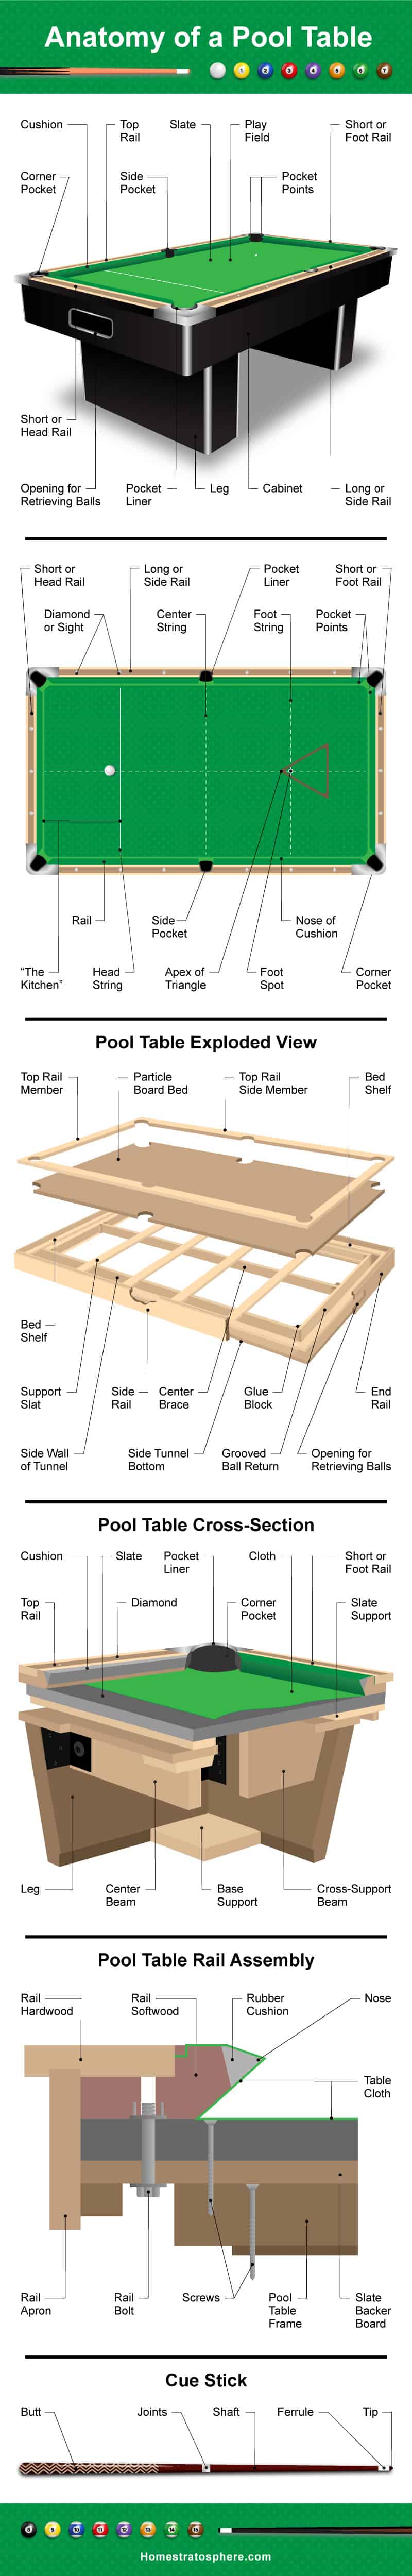 台球桌图解说明了一个台球桌的解剖，包括桌面，表面，横截面和球杆。